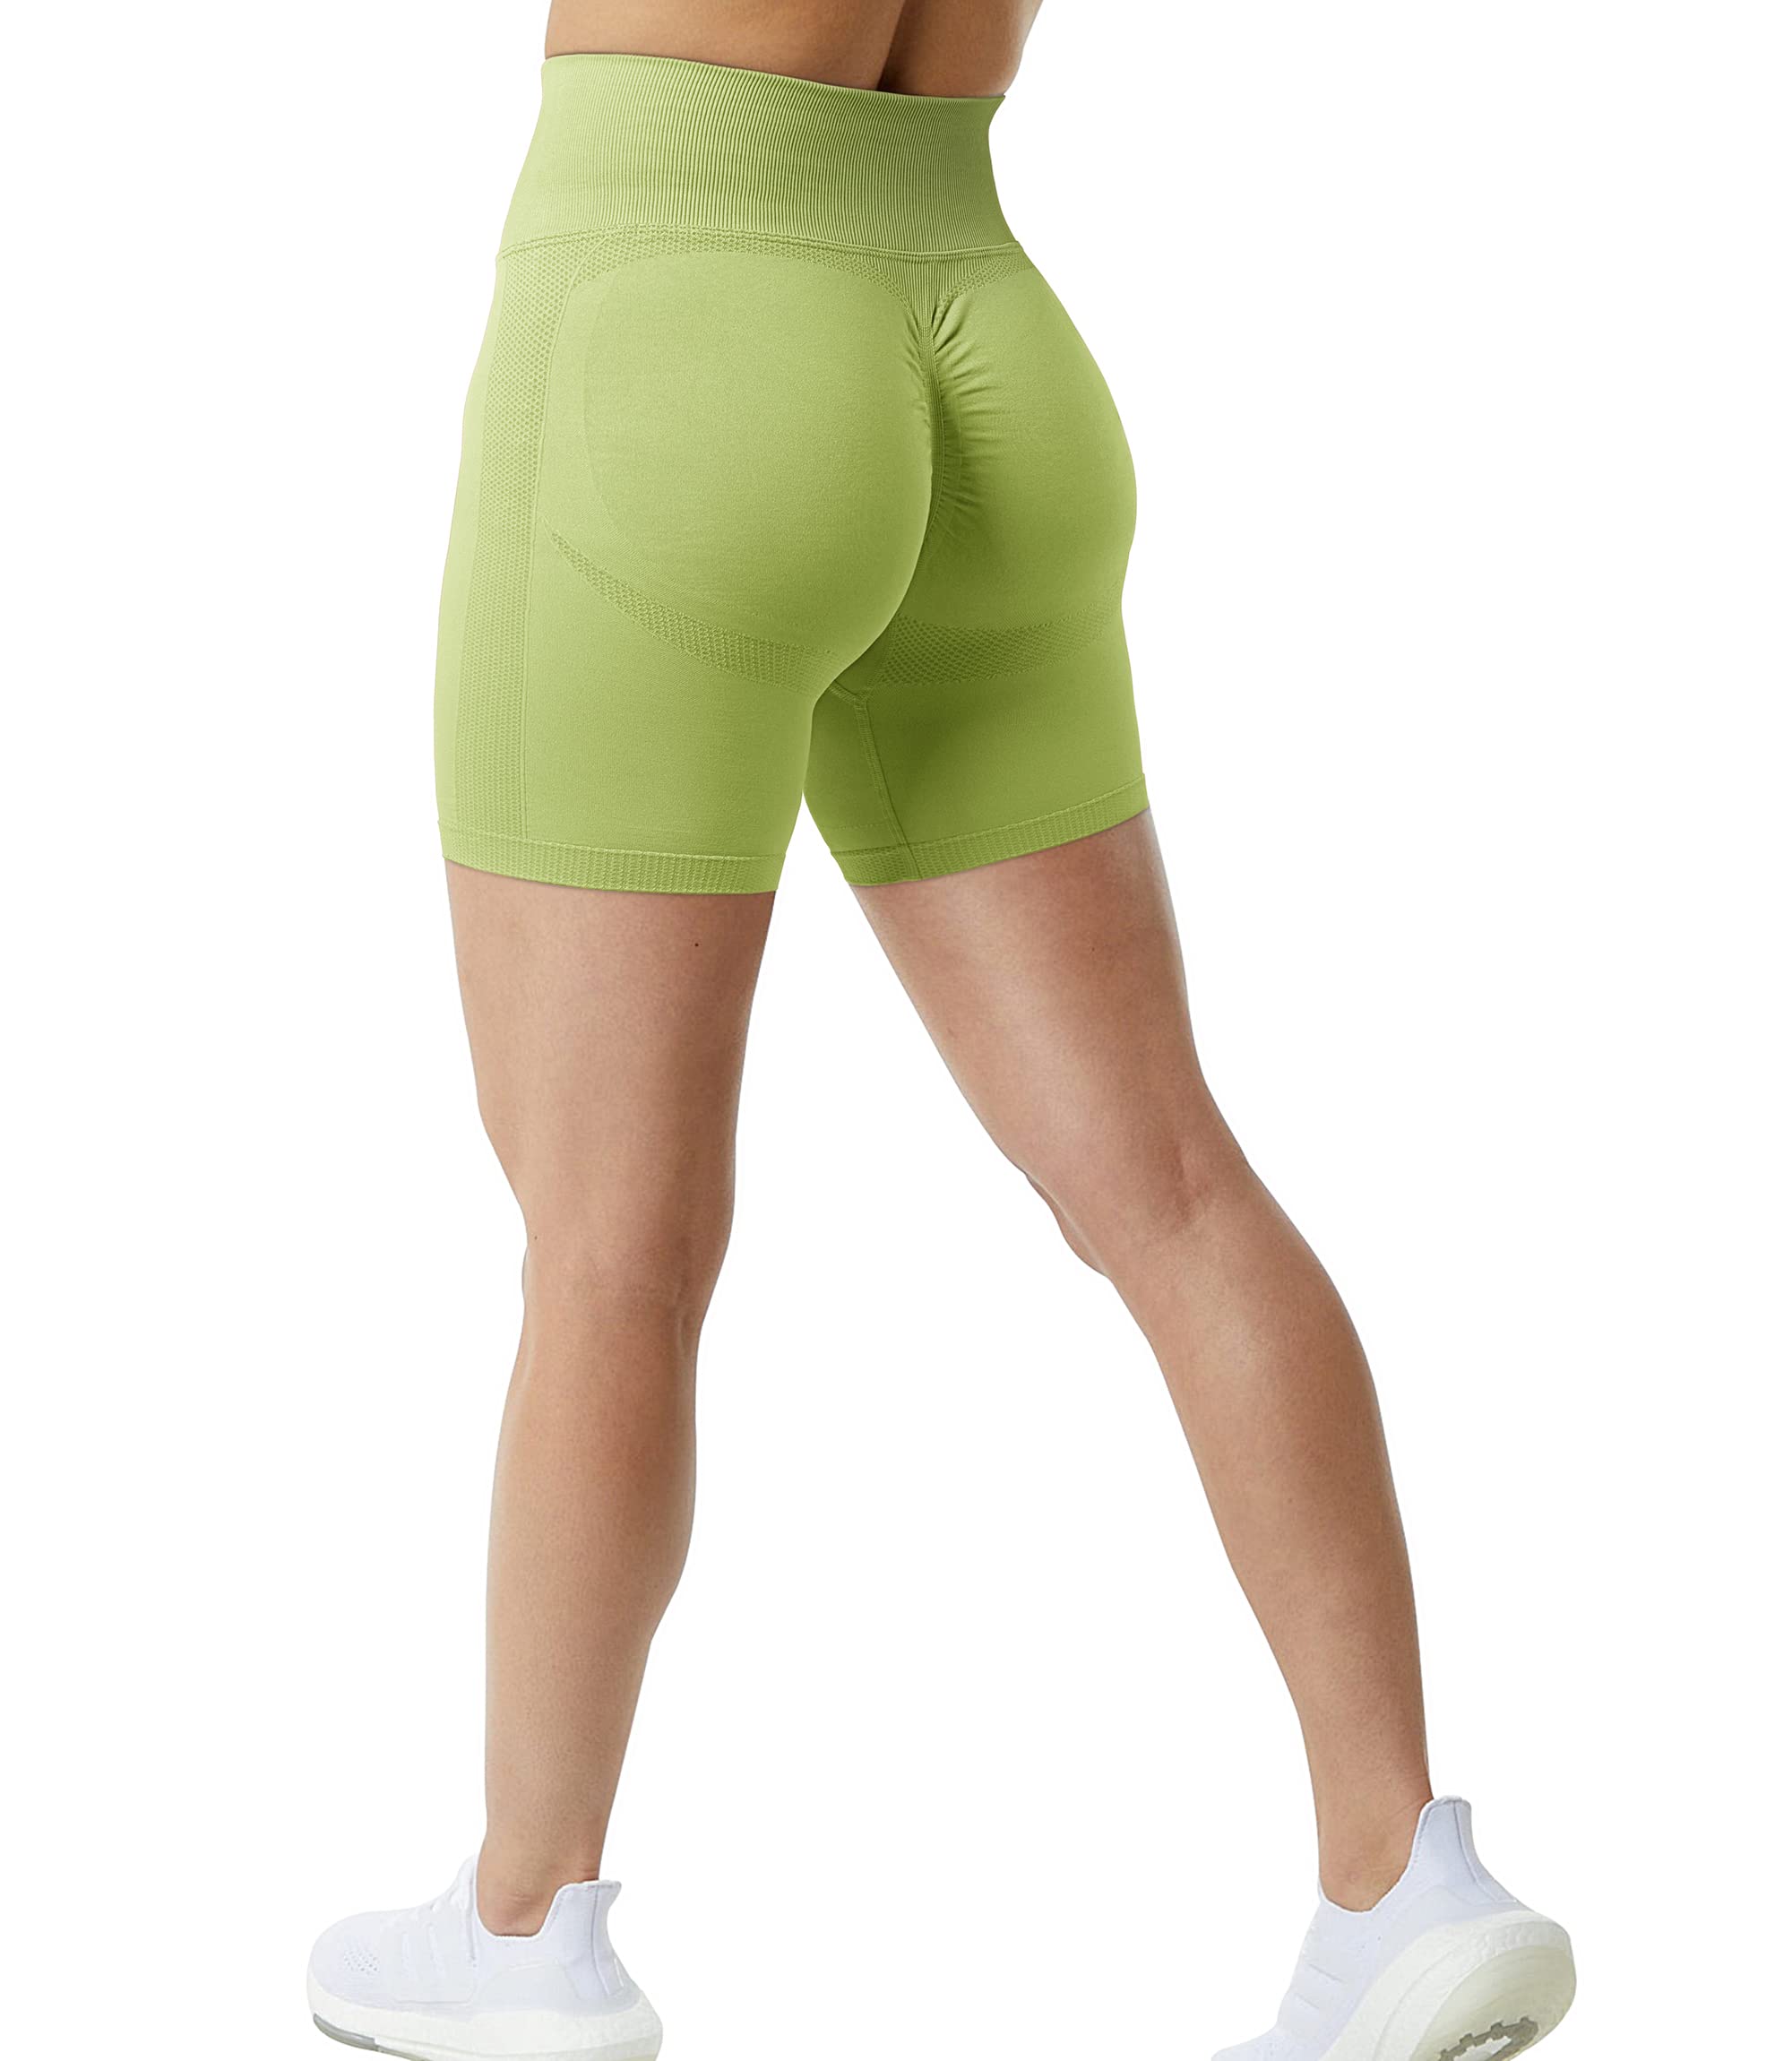 Women Fitness Sports Butt Lifting Shorts Shaping Beauty External Wear  Leggings, Size: S/M(Green), snatcher